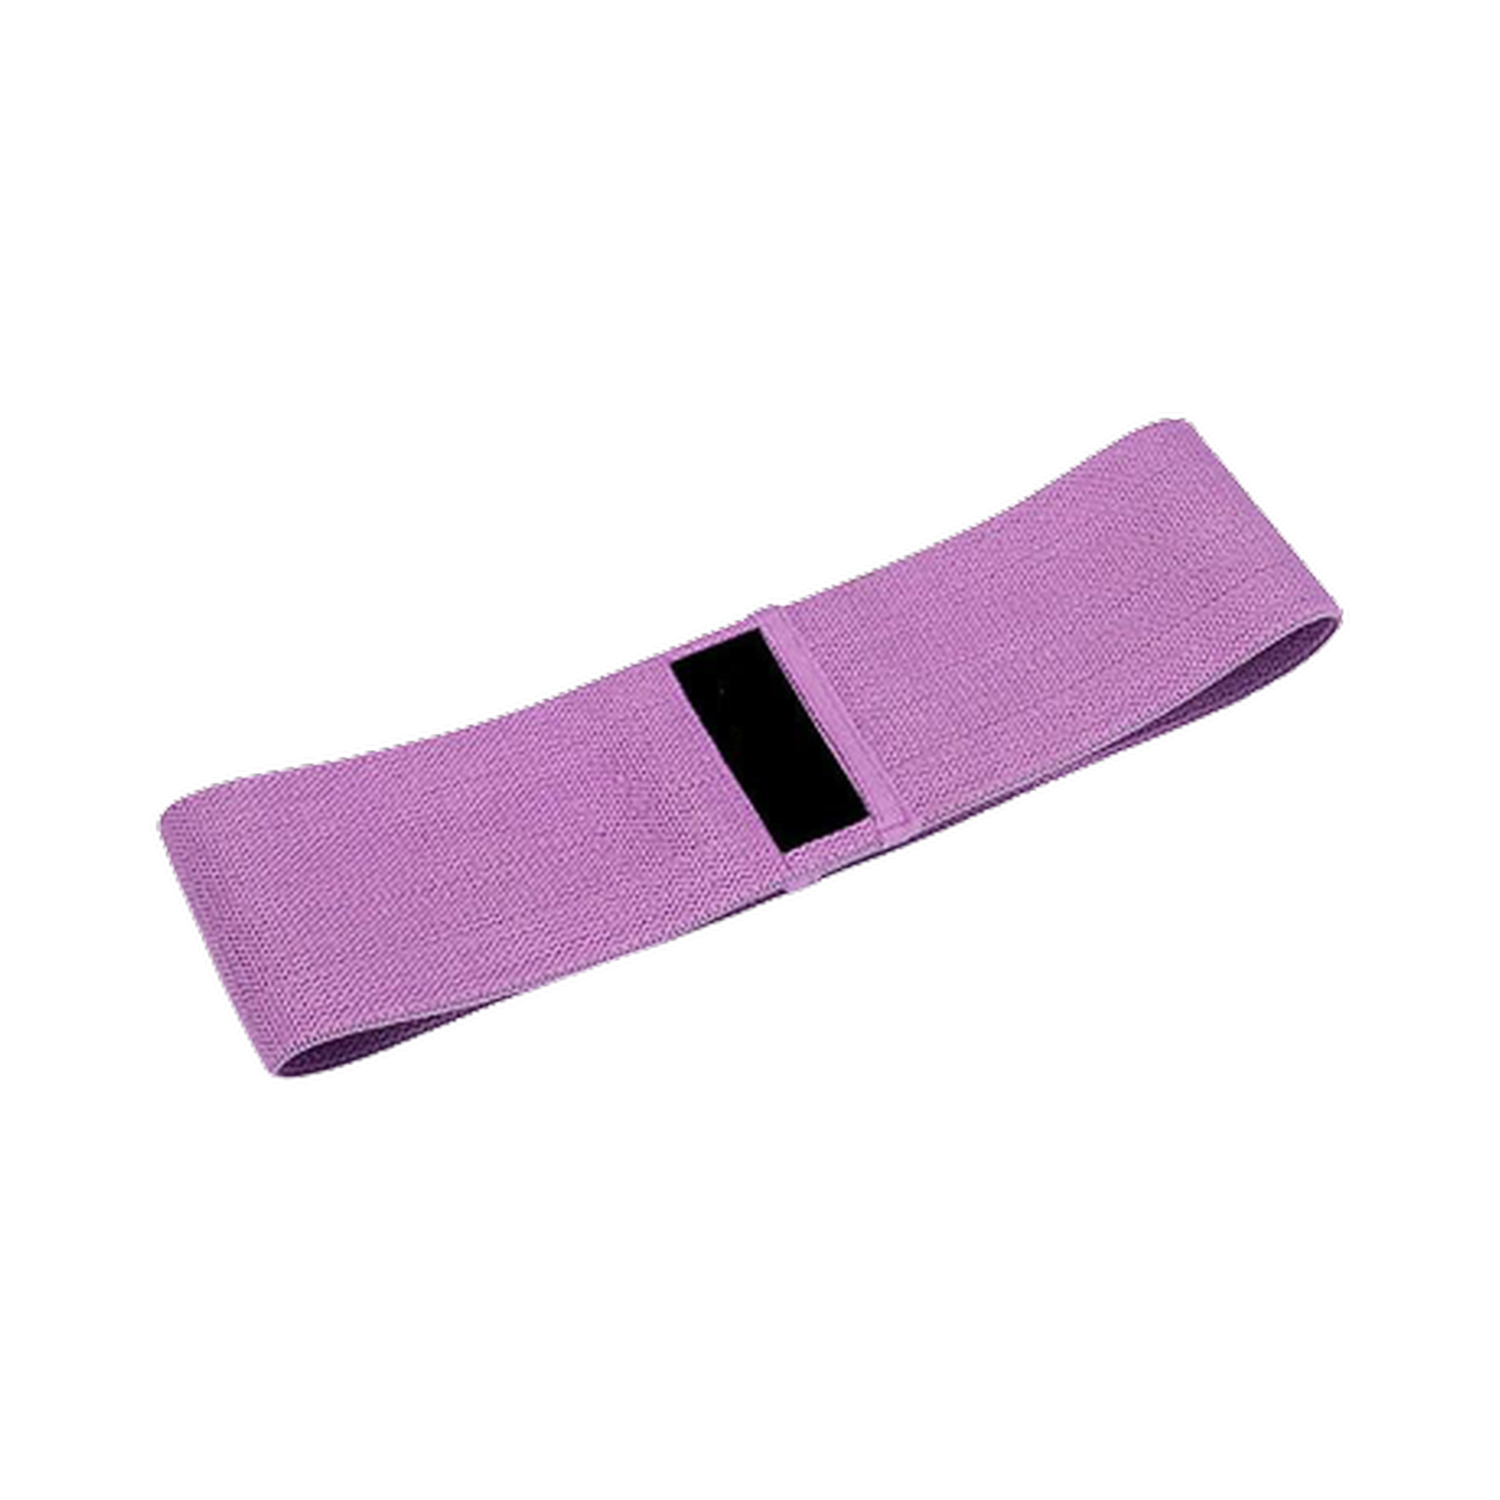 Фитнес-резинка Beroma тканевая фиолетовая размер M - фото 1